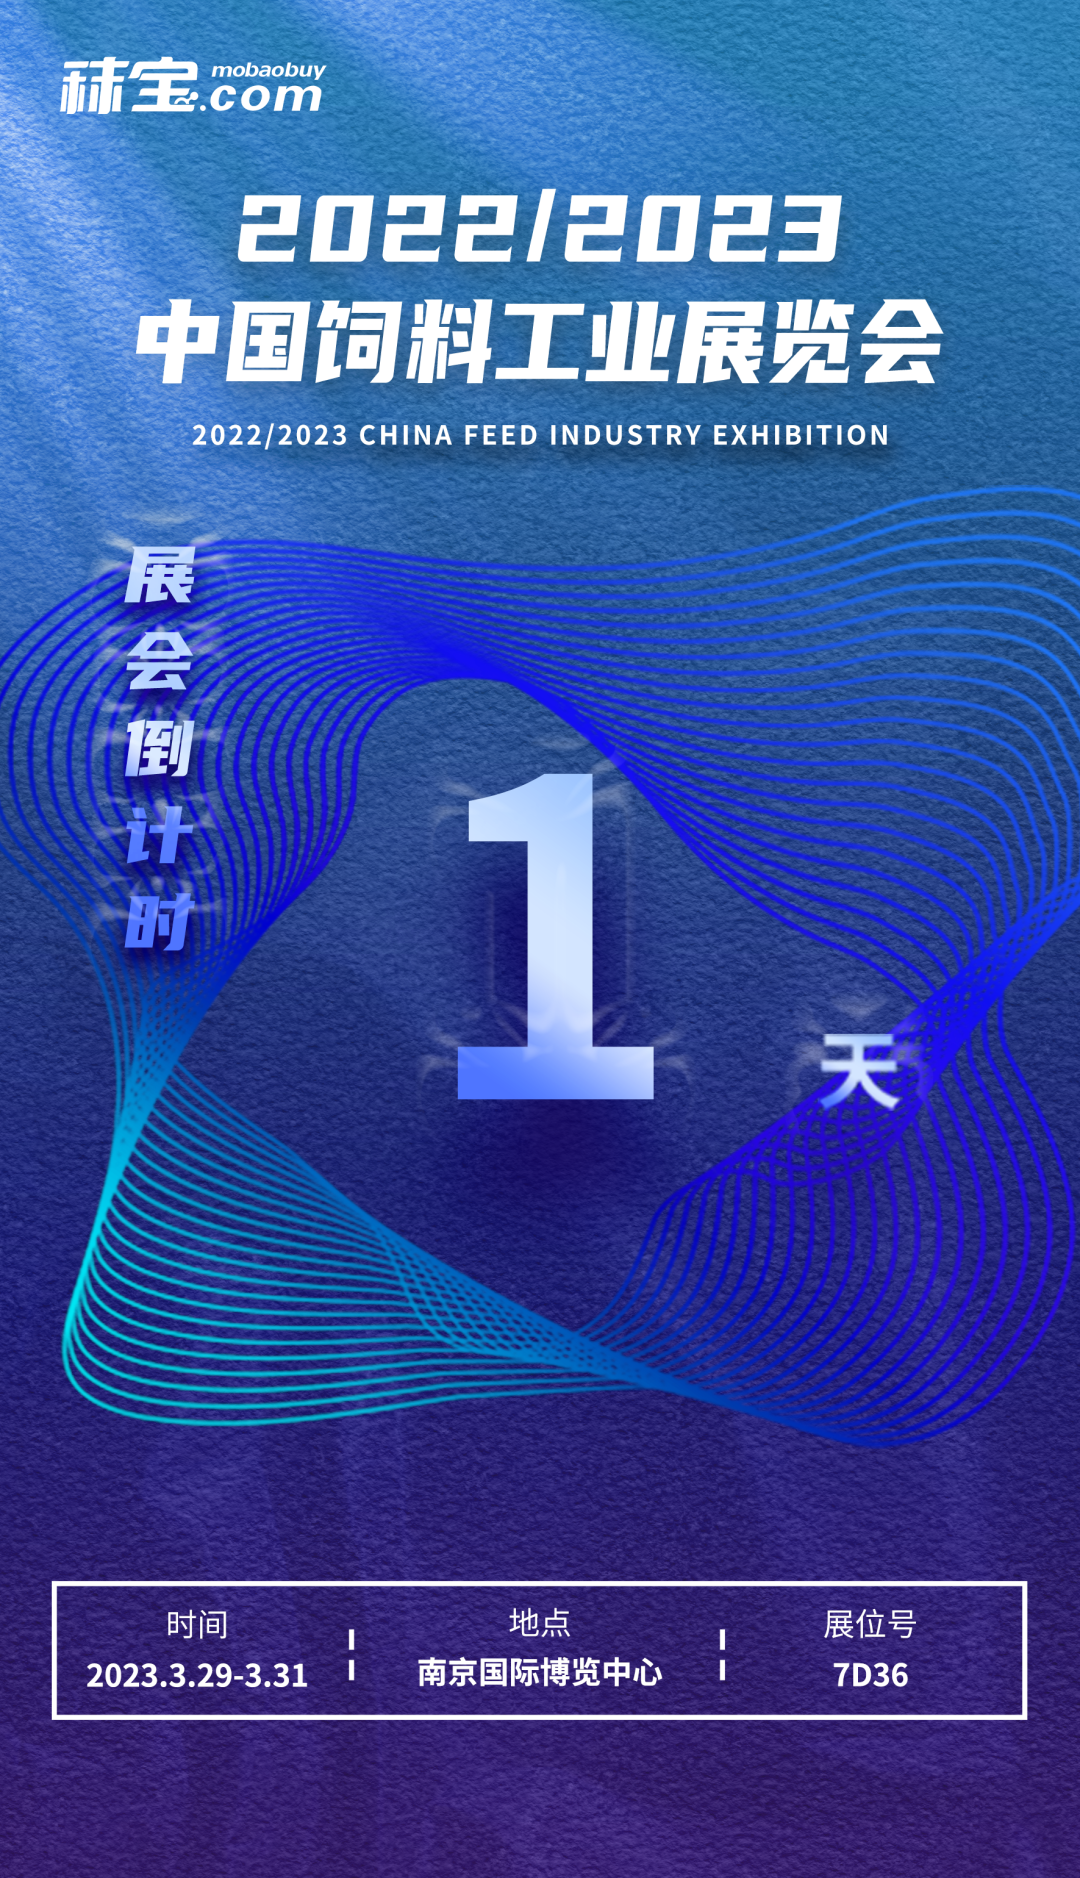 2022/2023中国饲料工业展览会倒计时1天